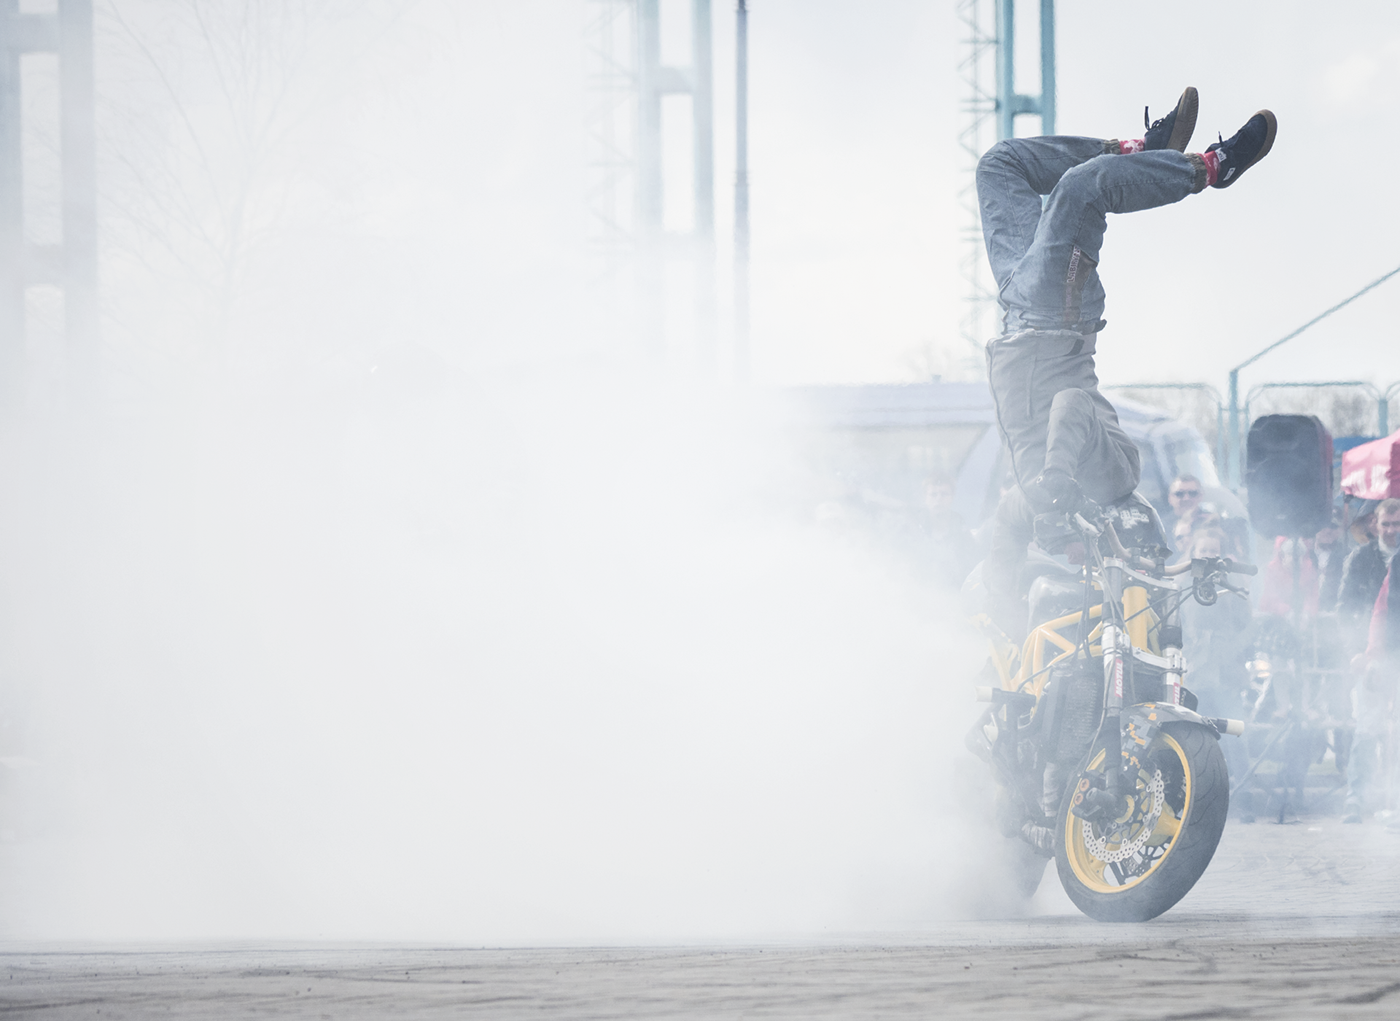 stunt moto rider biker Bike motorcycle Show sportbike Opening photo